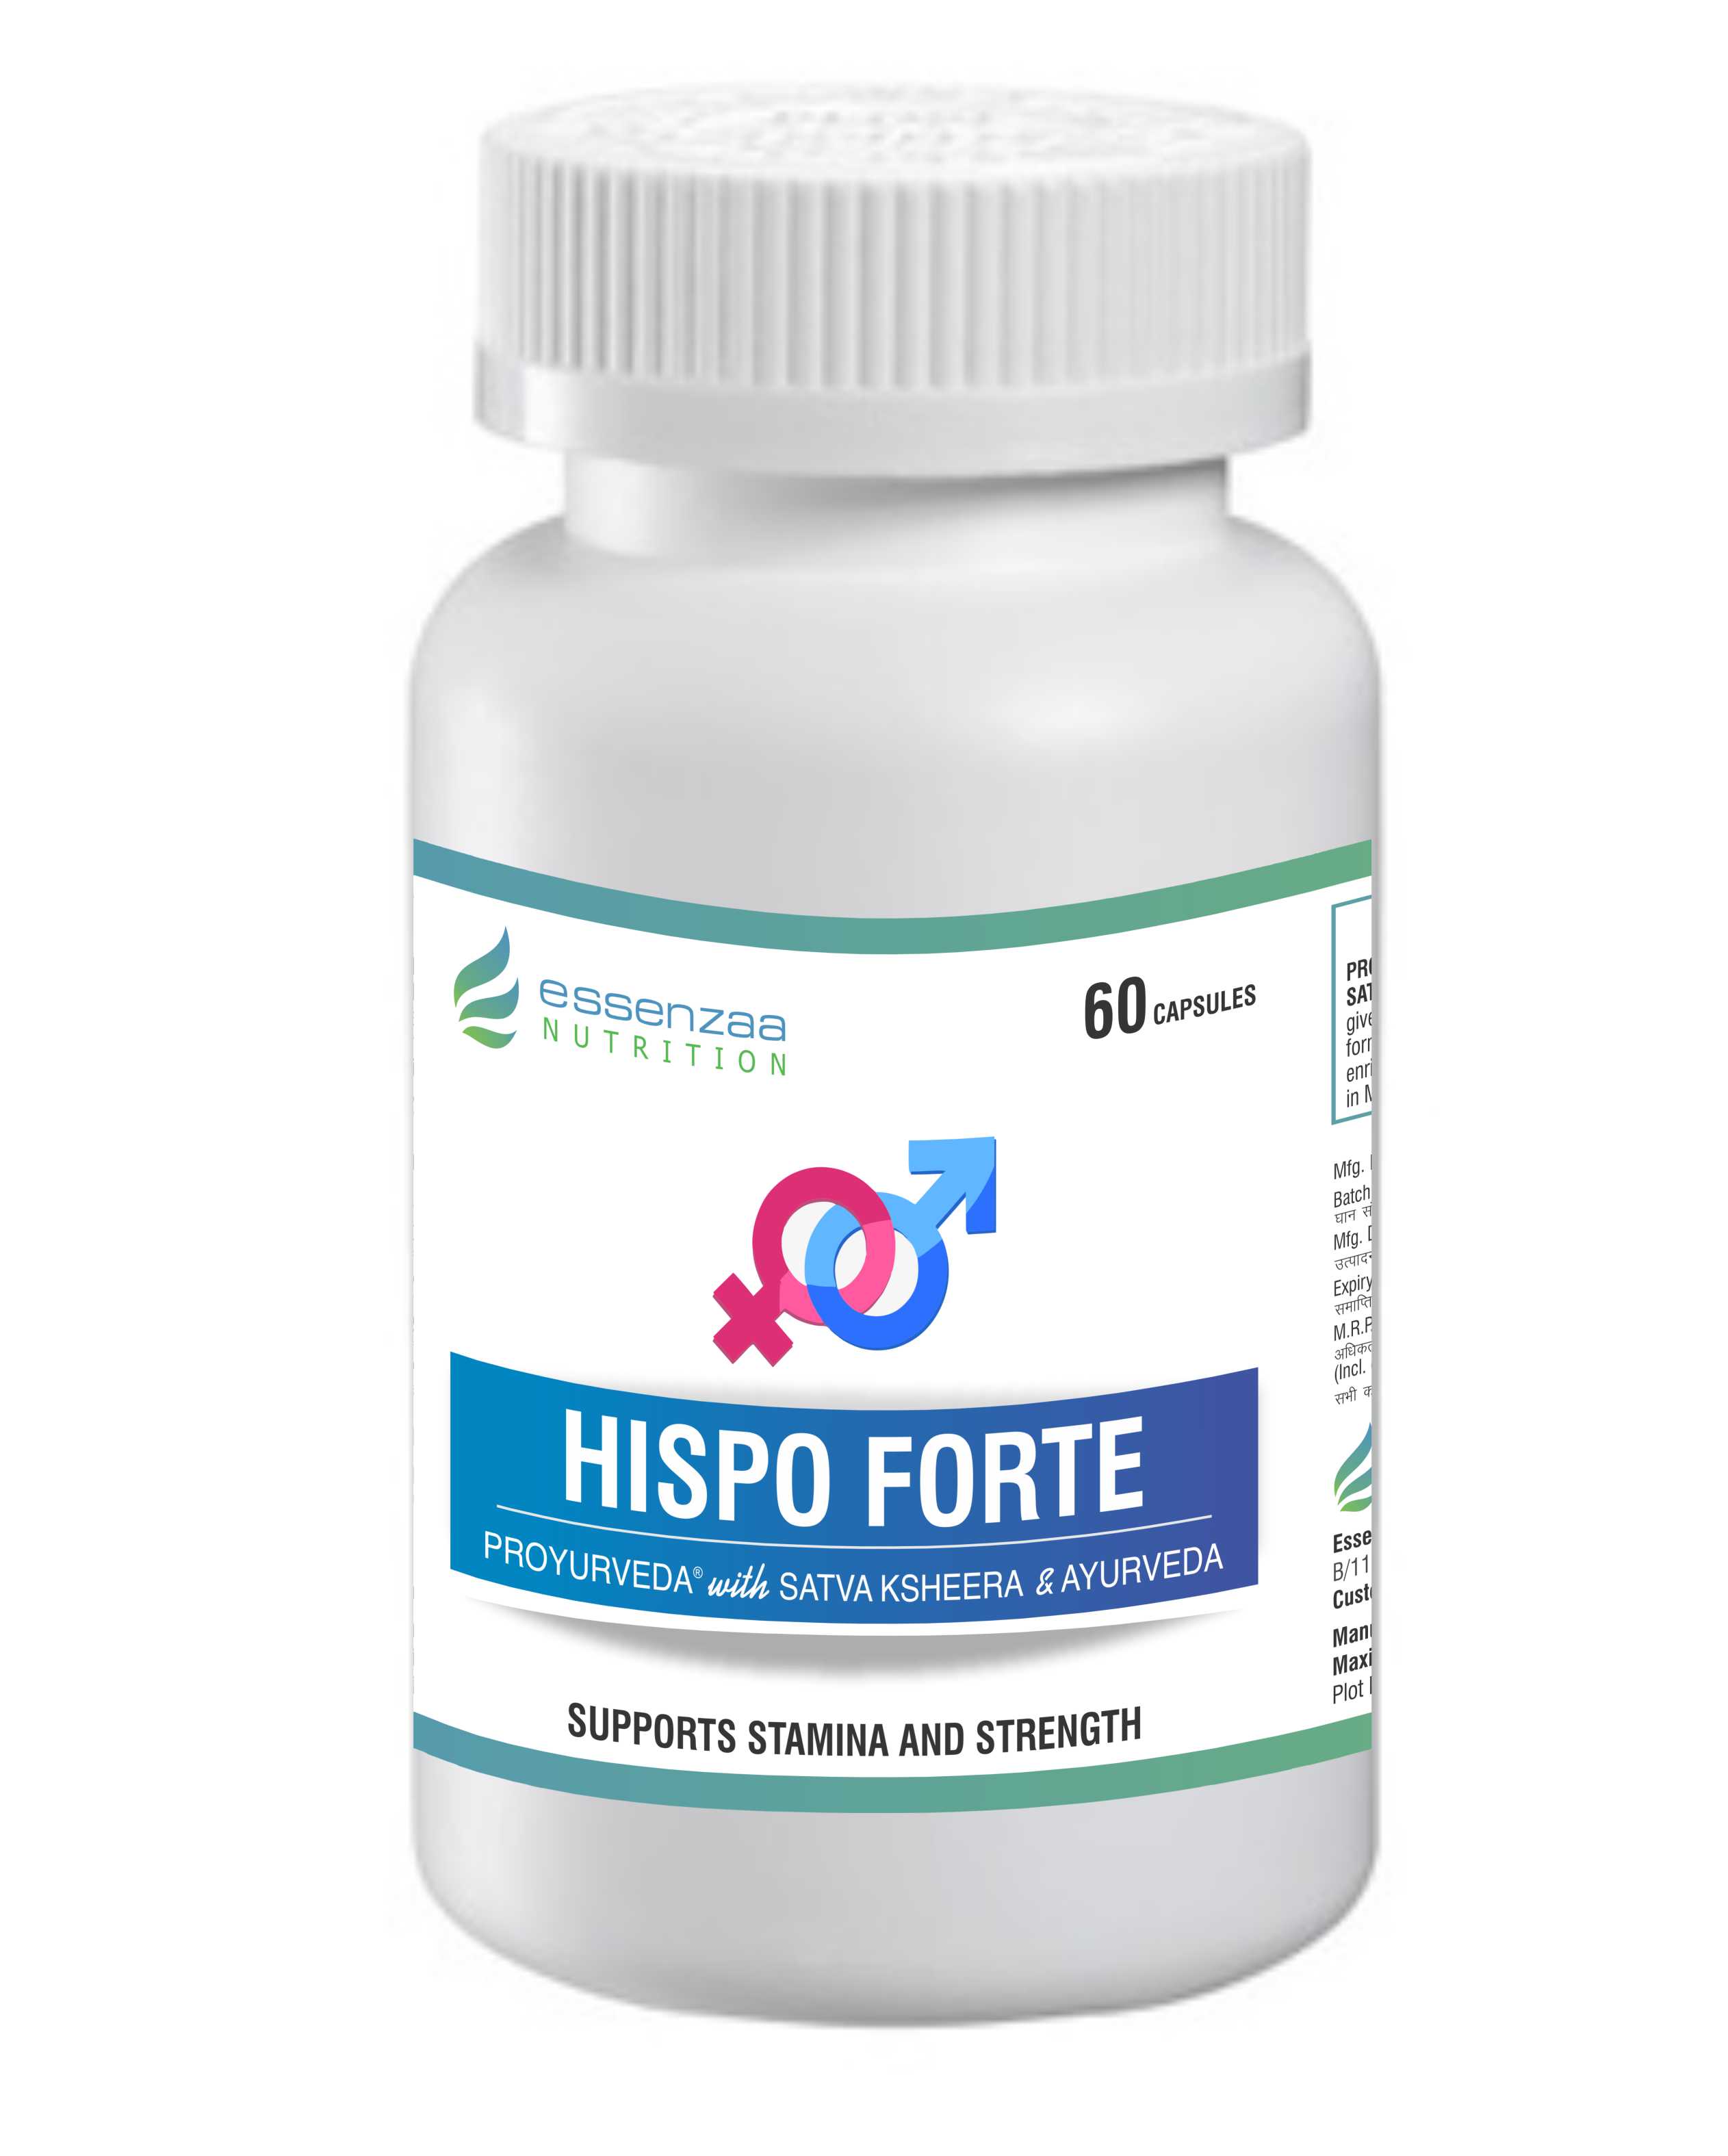 Buy Essenzaa Hispo Forte Capsules (Maximaa Proyurveda Hispo Forte Capsules) at Best Price Online